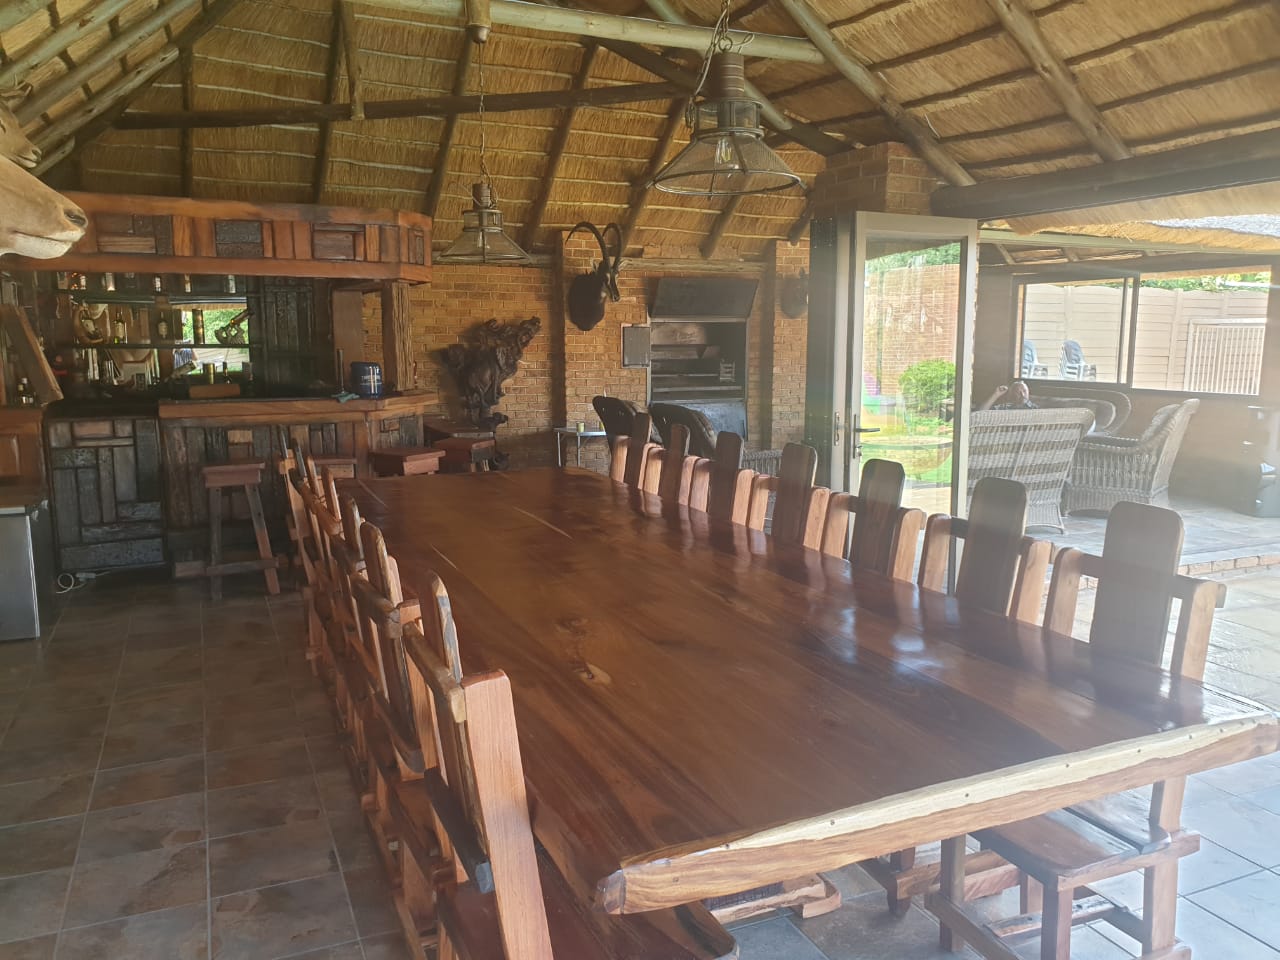 Lodge diningroom furniture